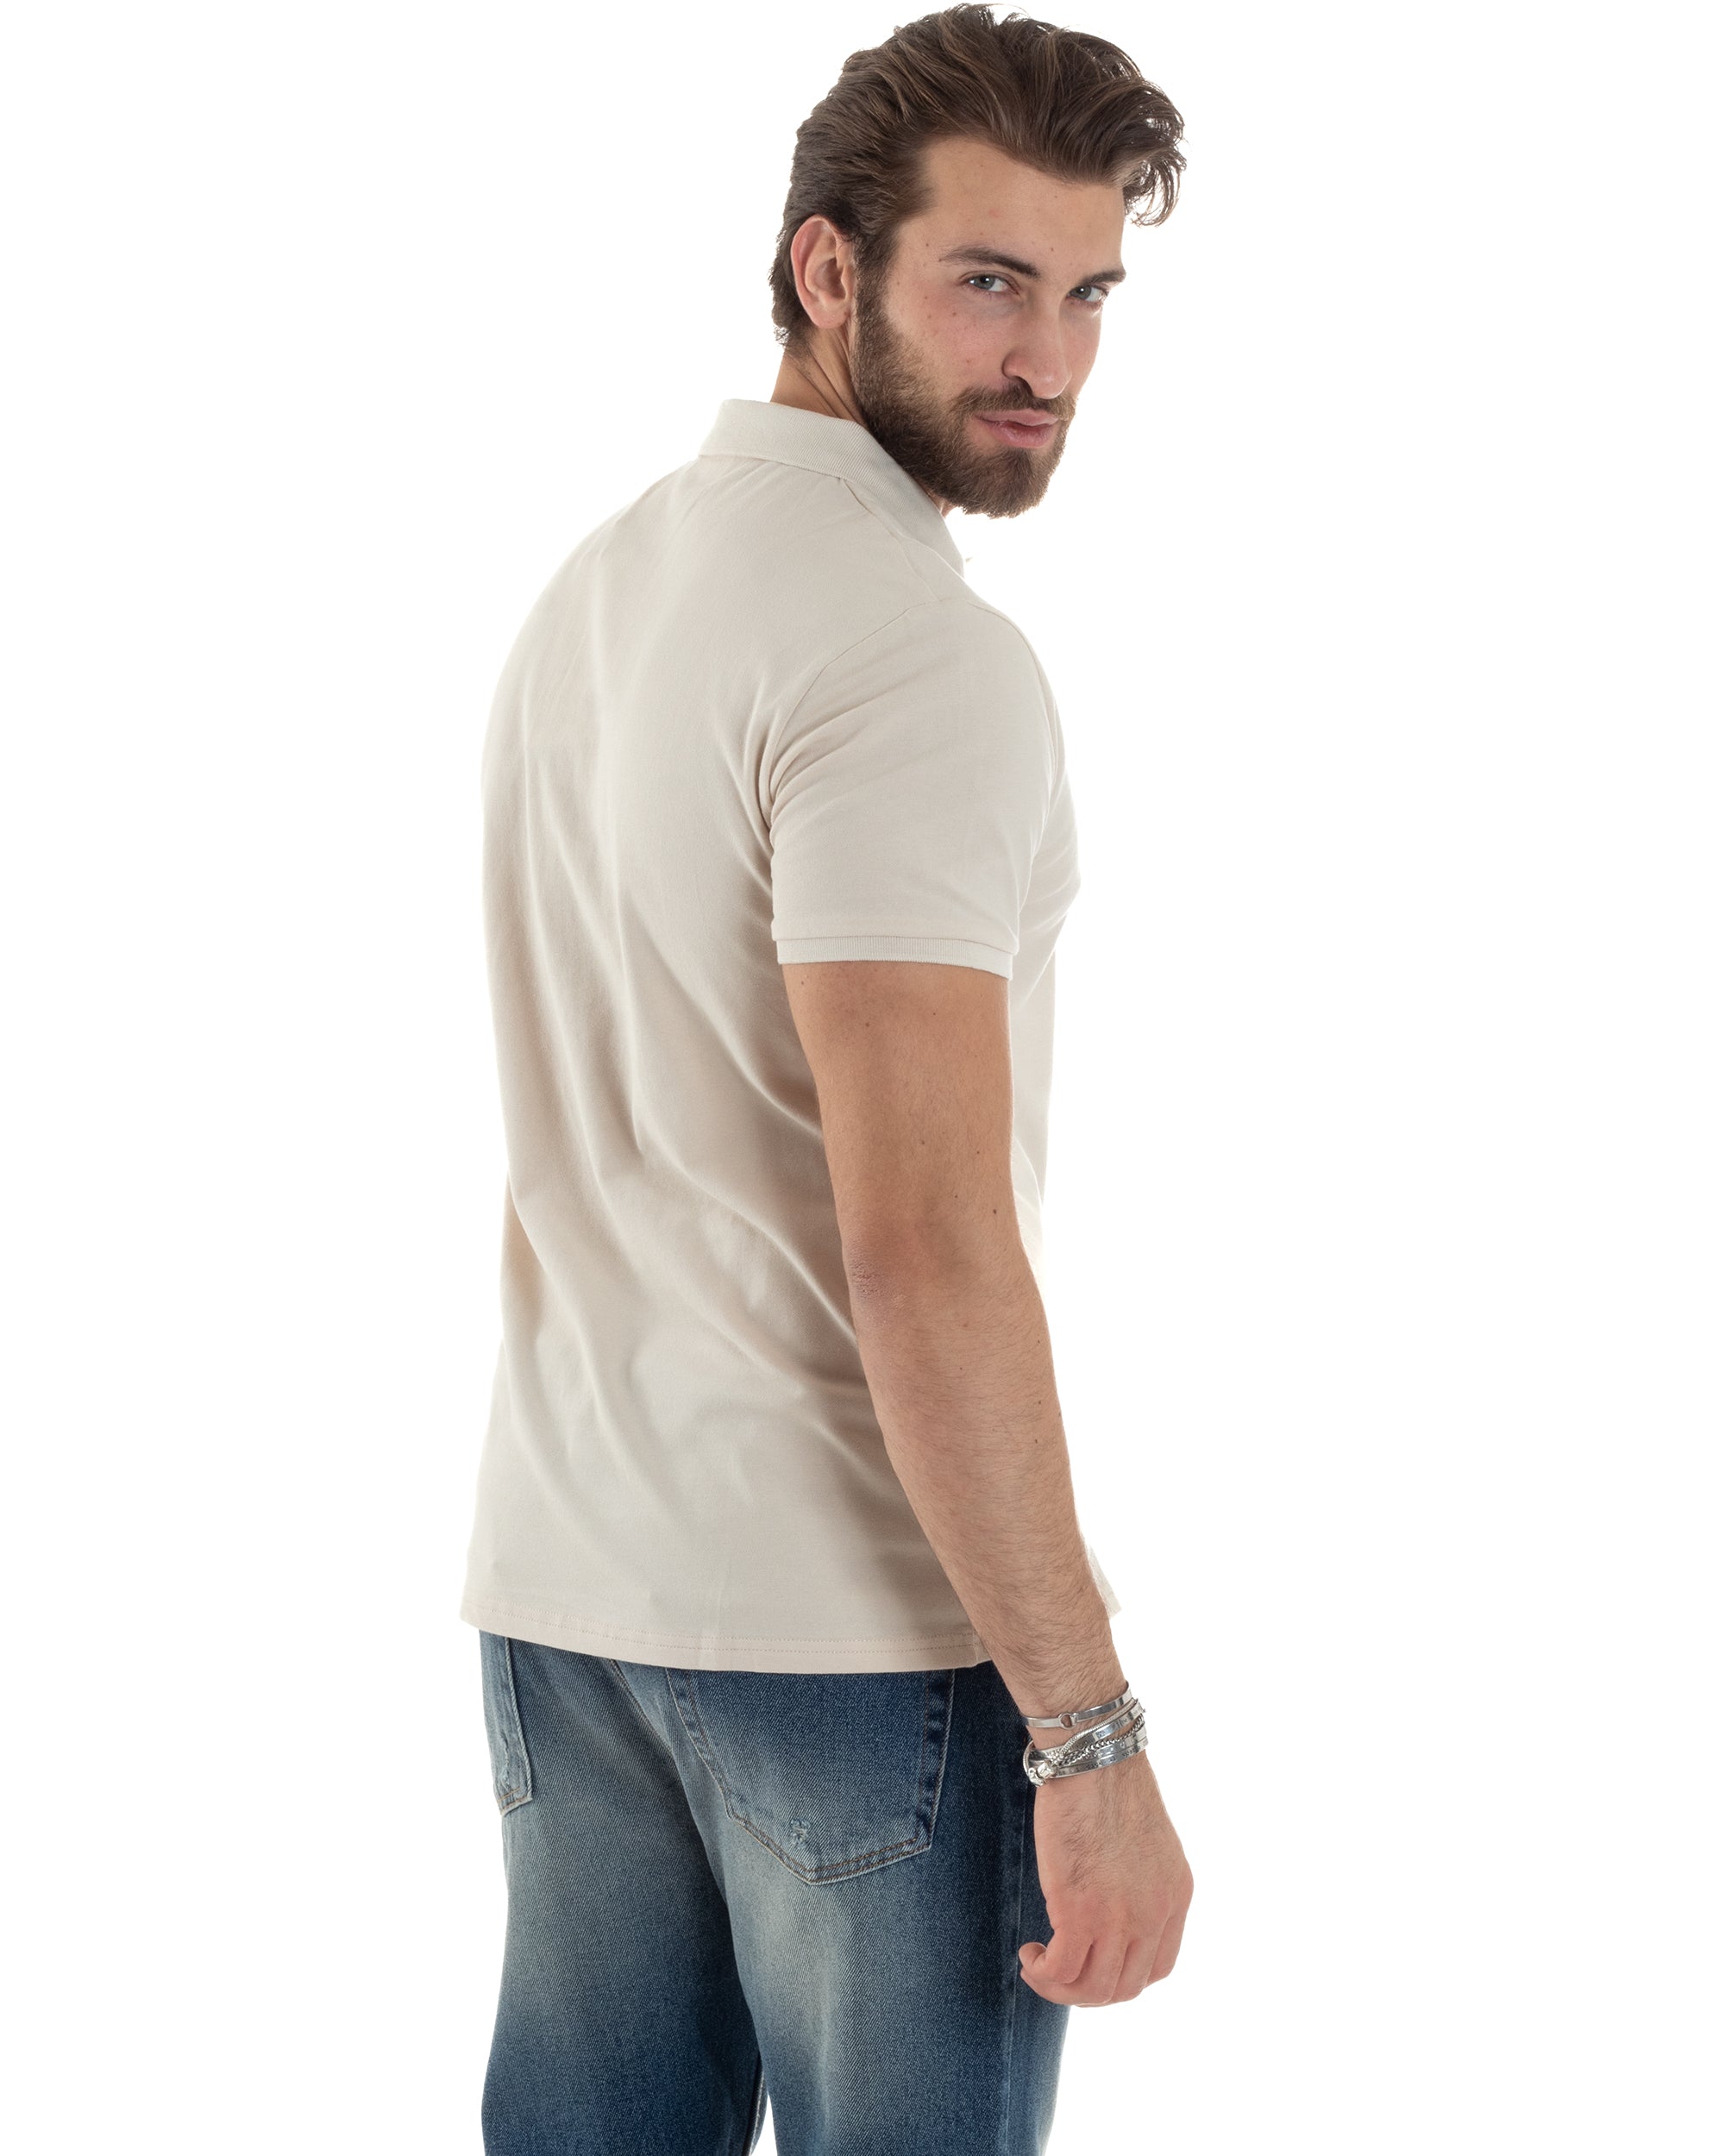 Polo Uomo Manica Corta T-shirt Con Colletto Bottoncini Basic Slim Fit Casual Tinta Unita Beige GIOSAL-TS3048A